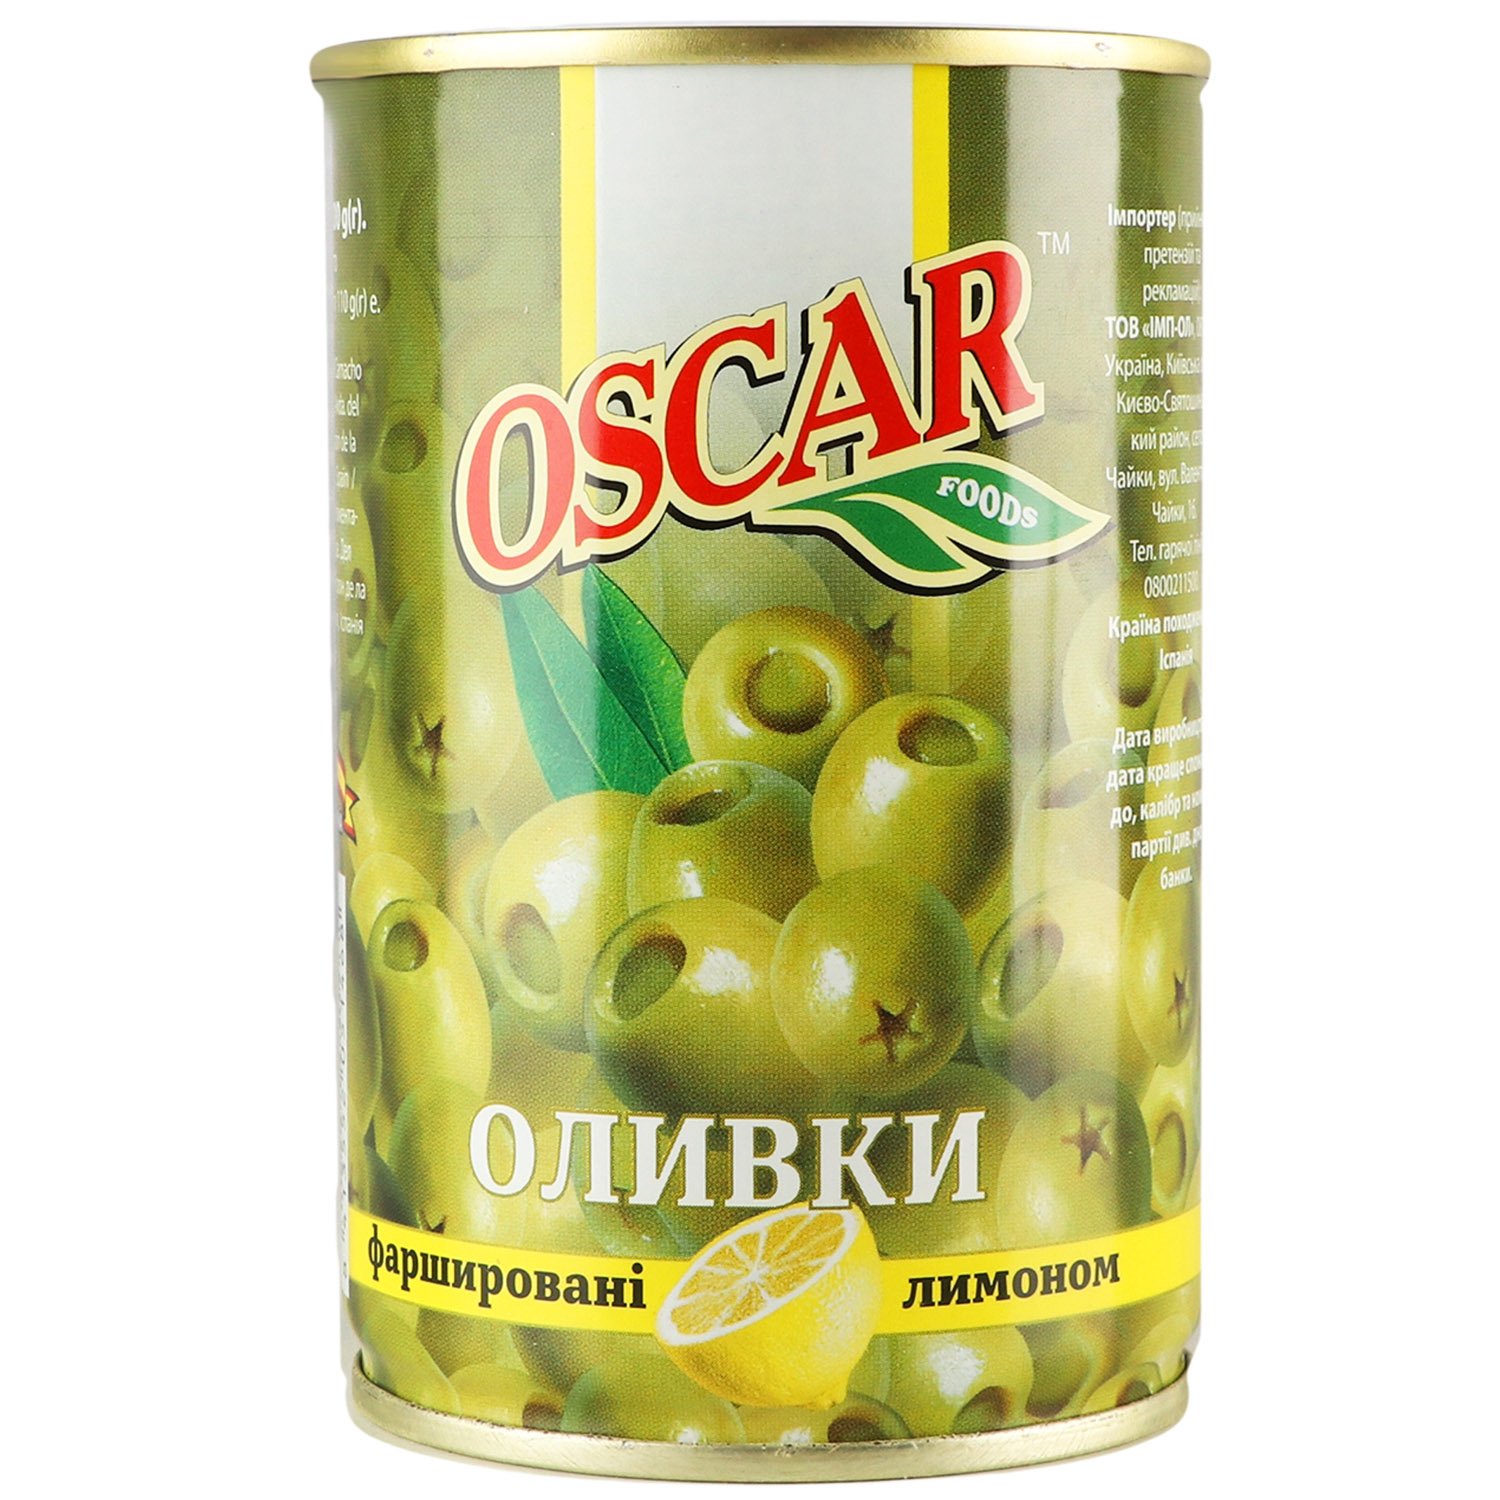 Оливки Oscar фаршированные лимоном 300 г (914657) - фото 1